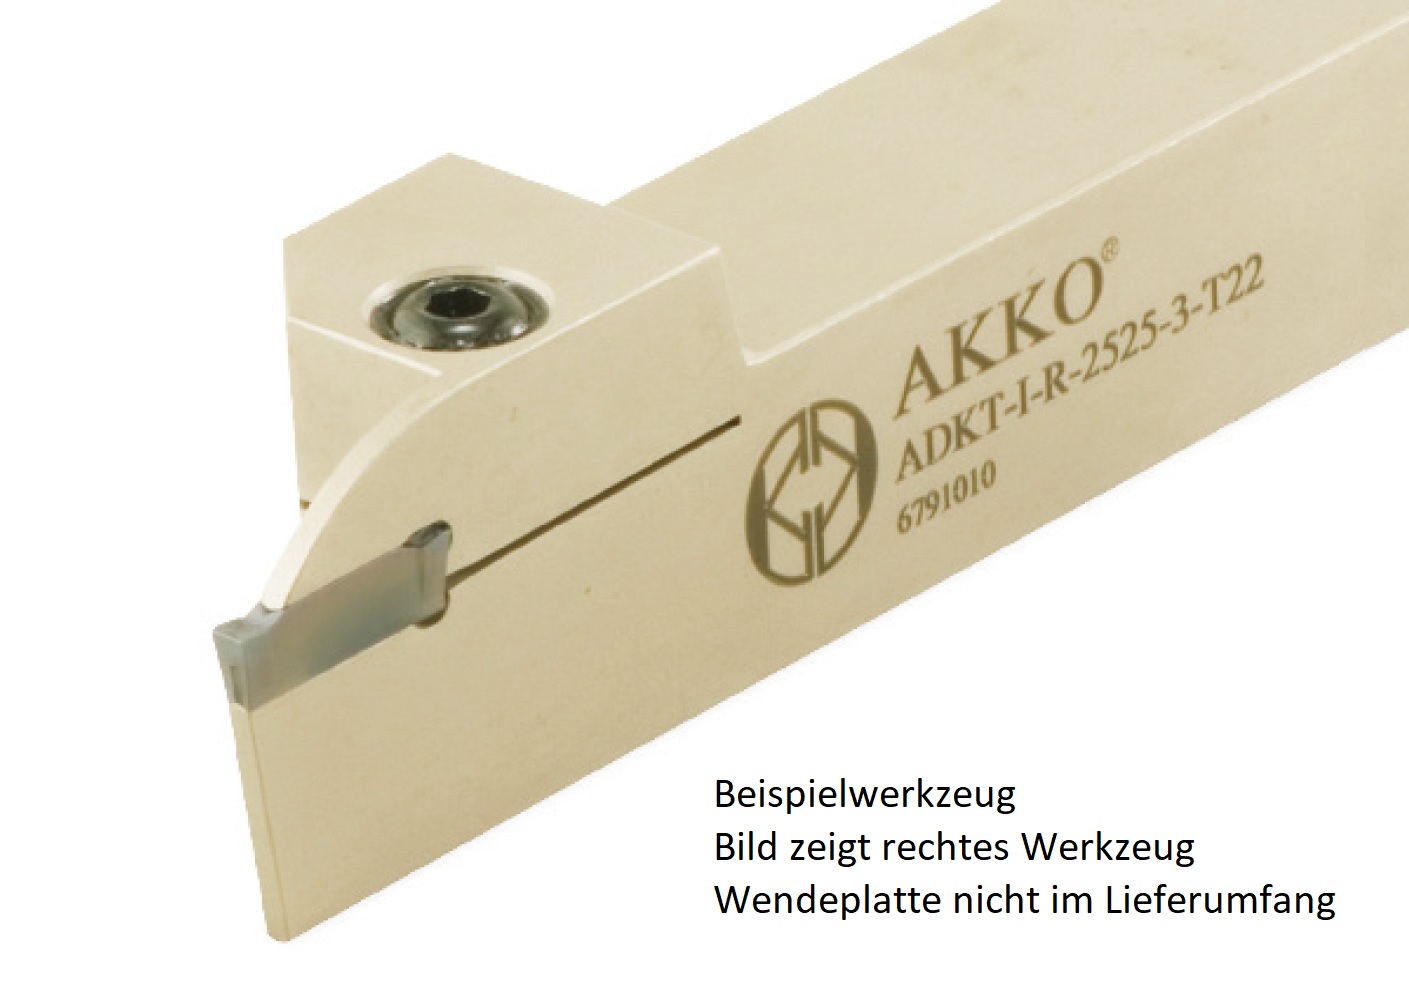 AKKO-Außen-Stechhalter, kompatibel mit Iscar-Stechplatte DGN-3
links, Schaft 20 x 20 mm